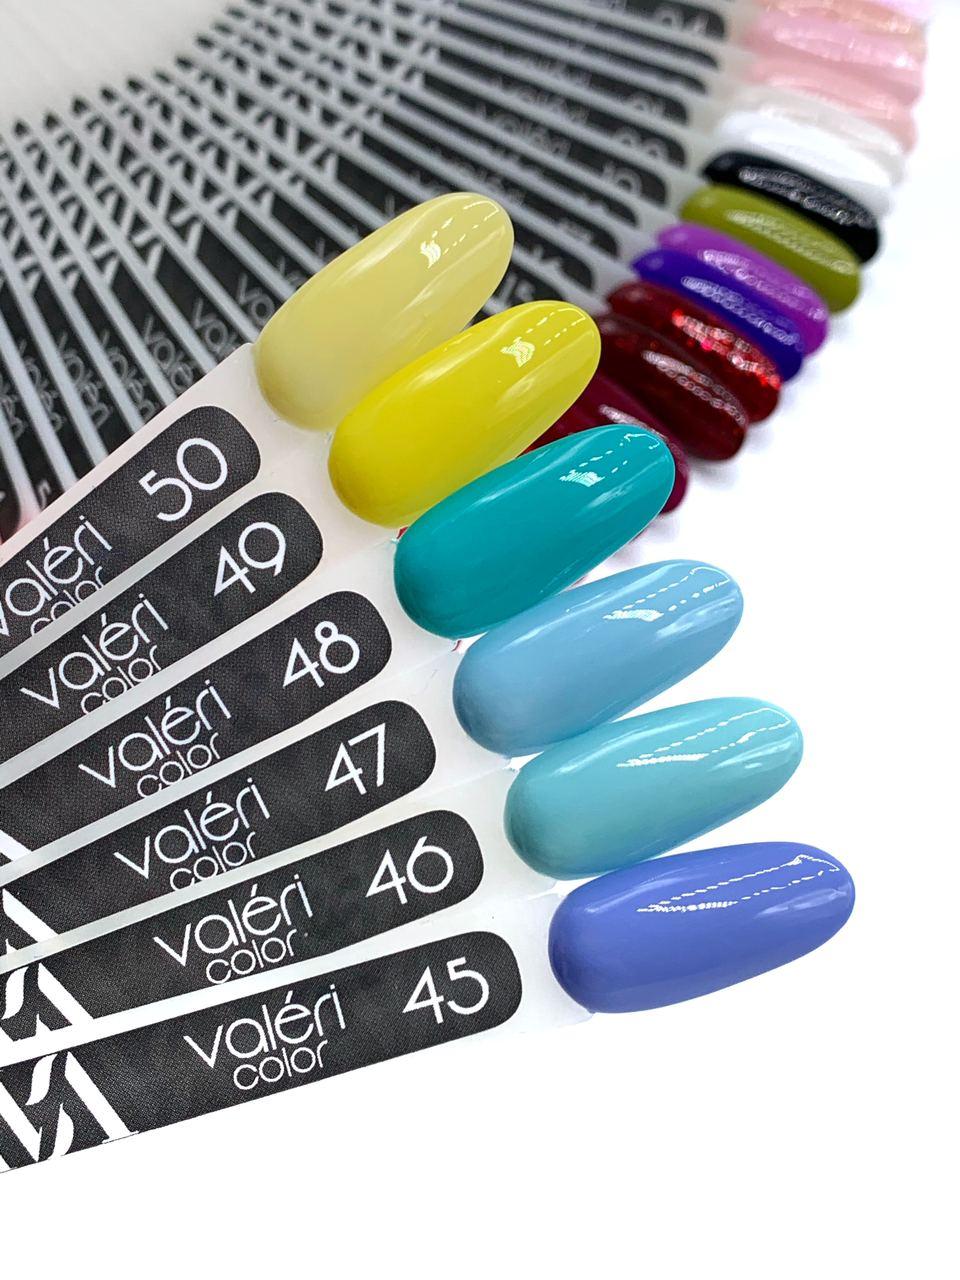 Гель лак для нігтів Valeri Color №048 (яскраво-бірюзовий) 6 мл